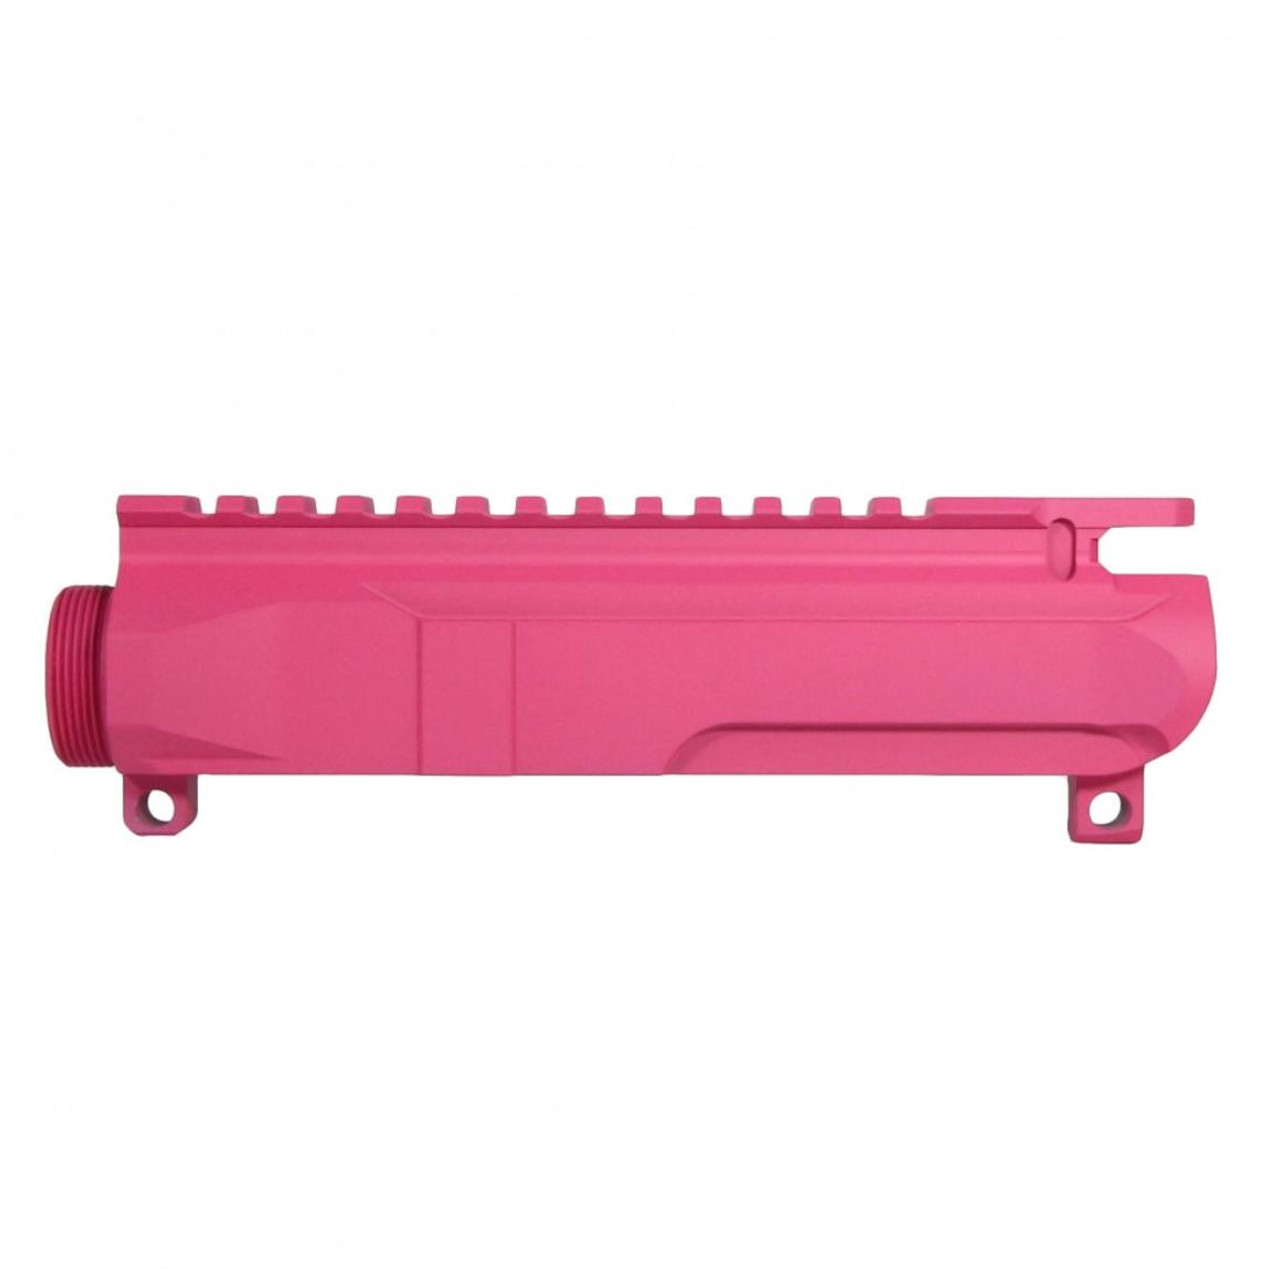 MCS AR-15/47/9/300 Billet Upper Receiver Cerakote - Pink (Made in USA) 